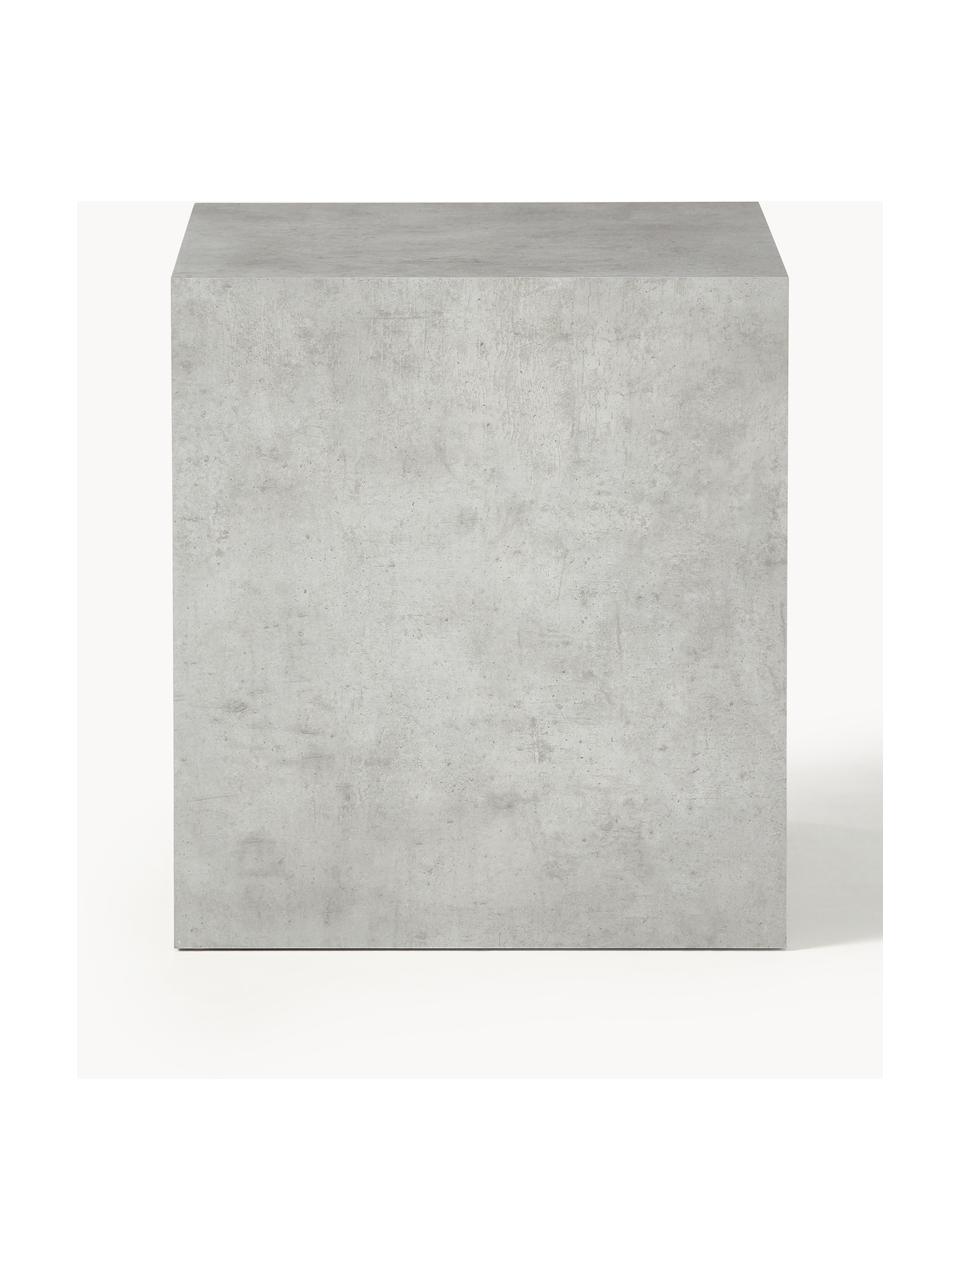 Mesa auxiliar en look cemento Lesley, Tablero de fibras de densidad media (MDF) recubierto en melanina, Aspecto cemento gris mate, An 45 x Al 50 cm